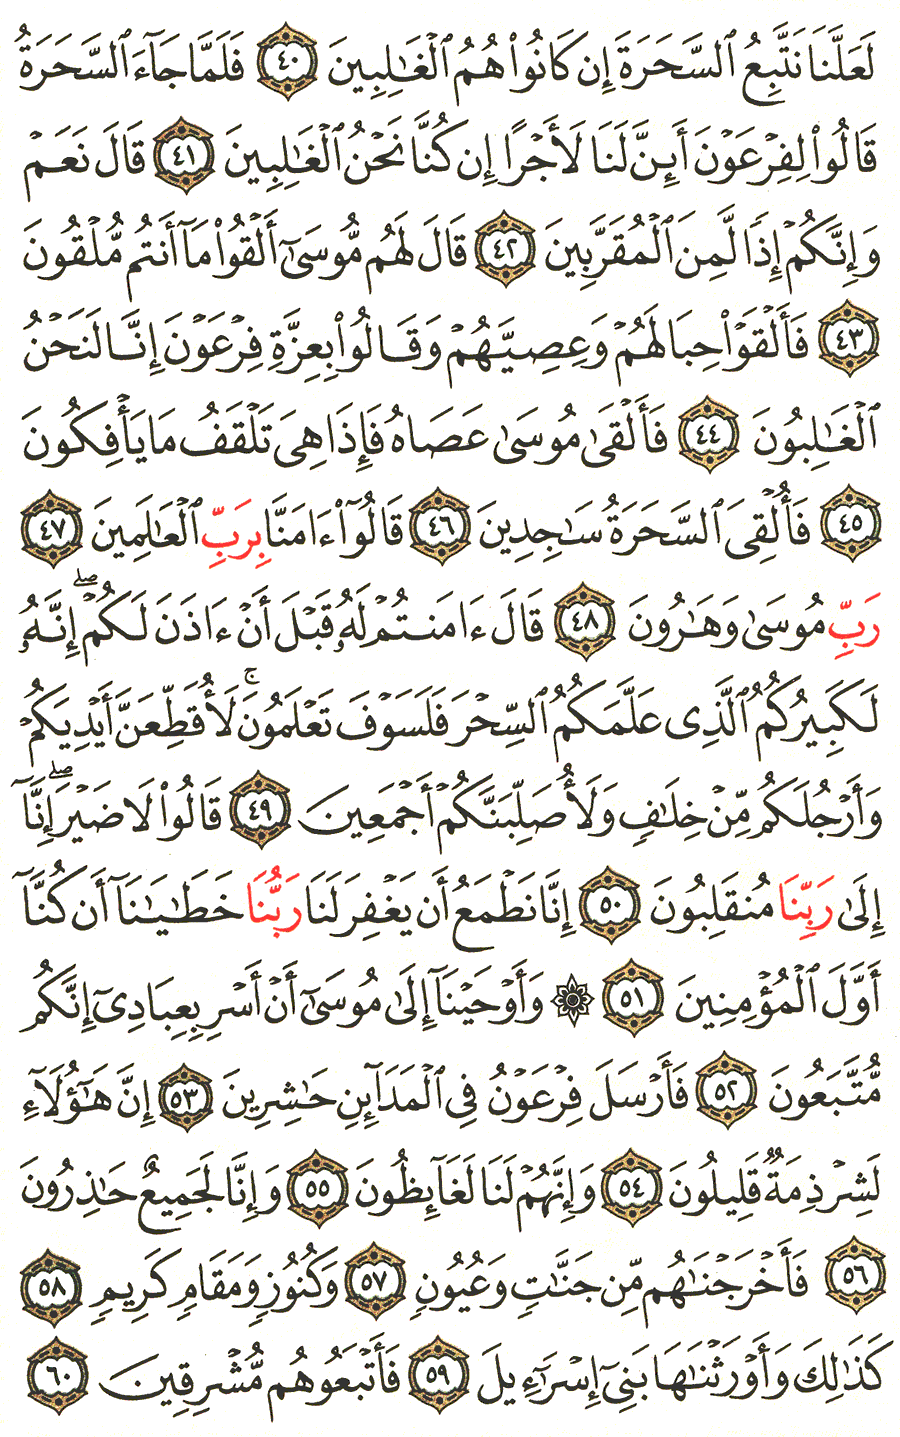 الصفحة رقم 369  من القرآن الكريم مكتوبة من المصحف